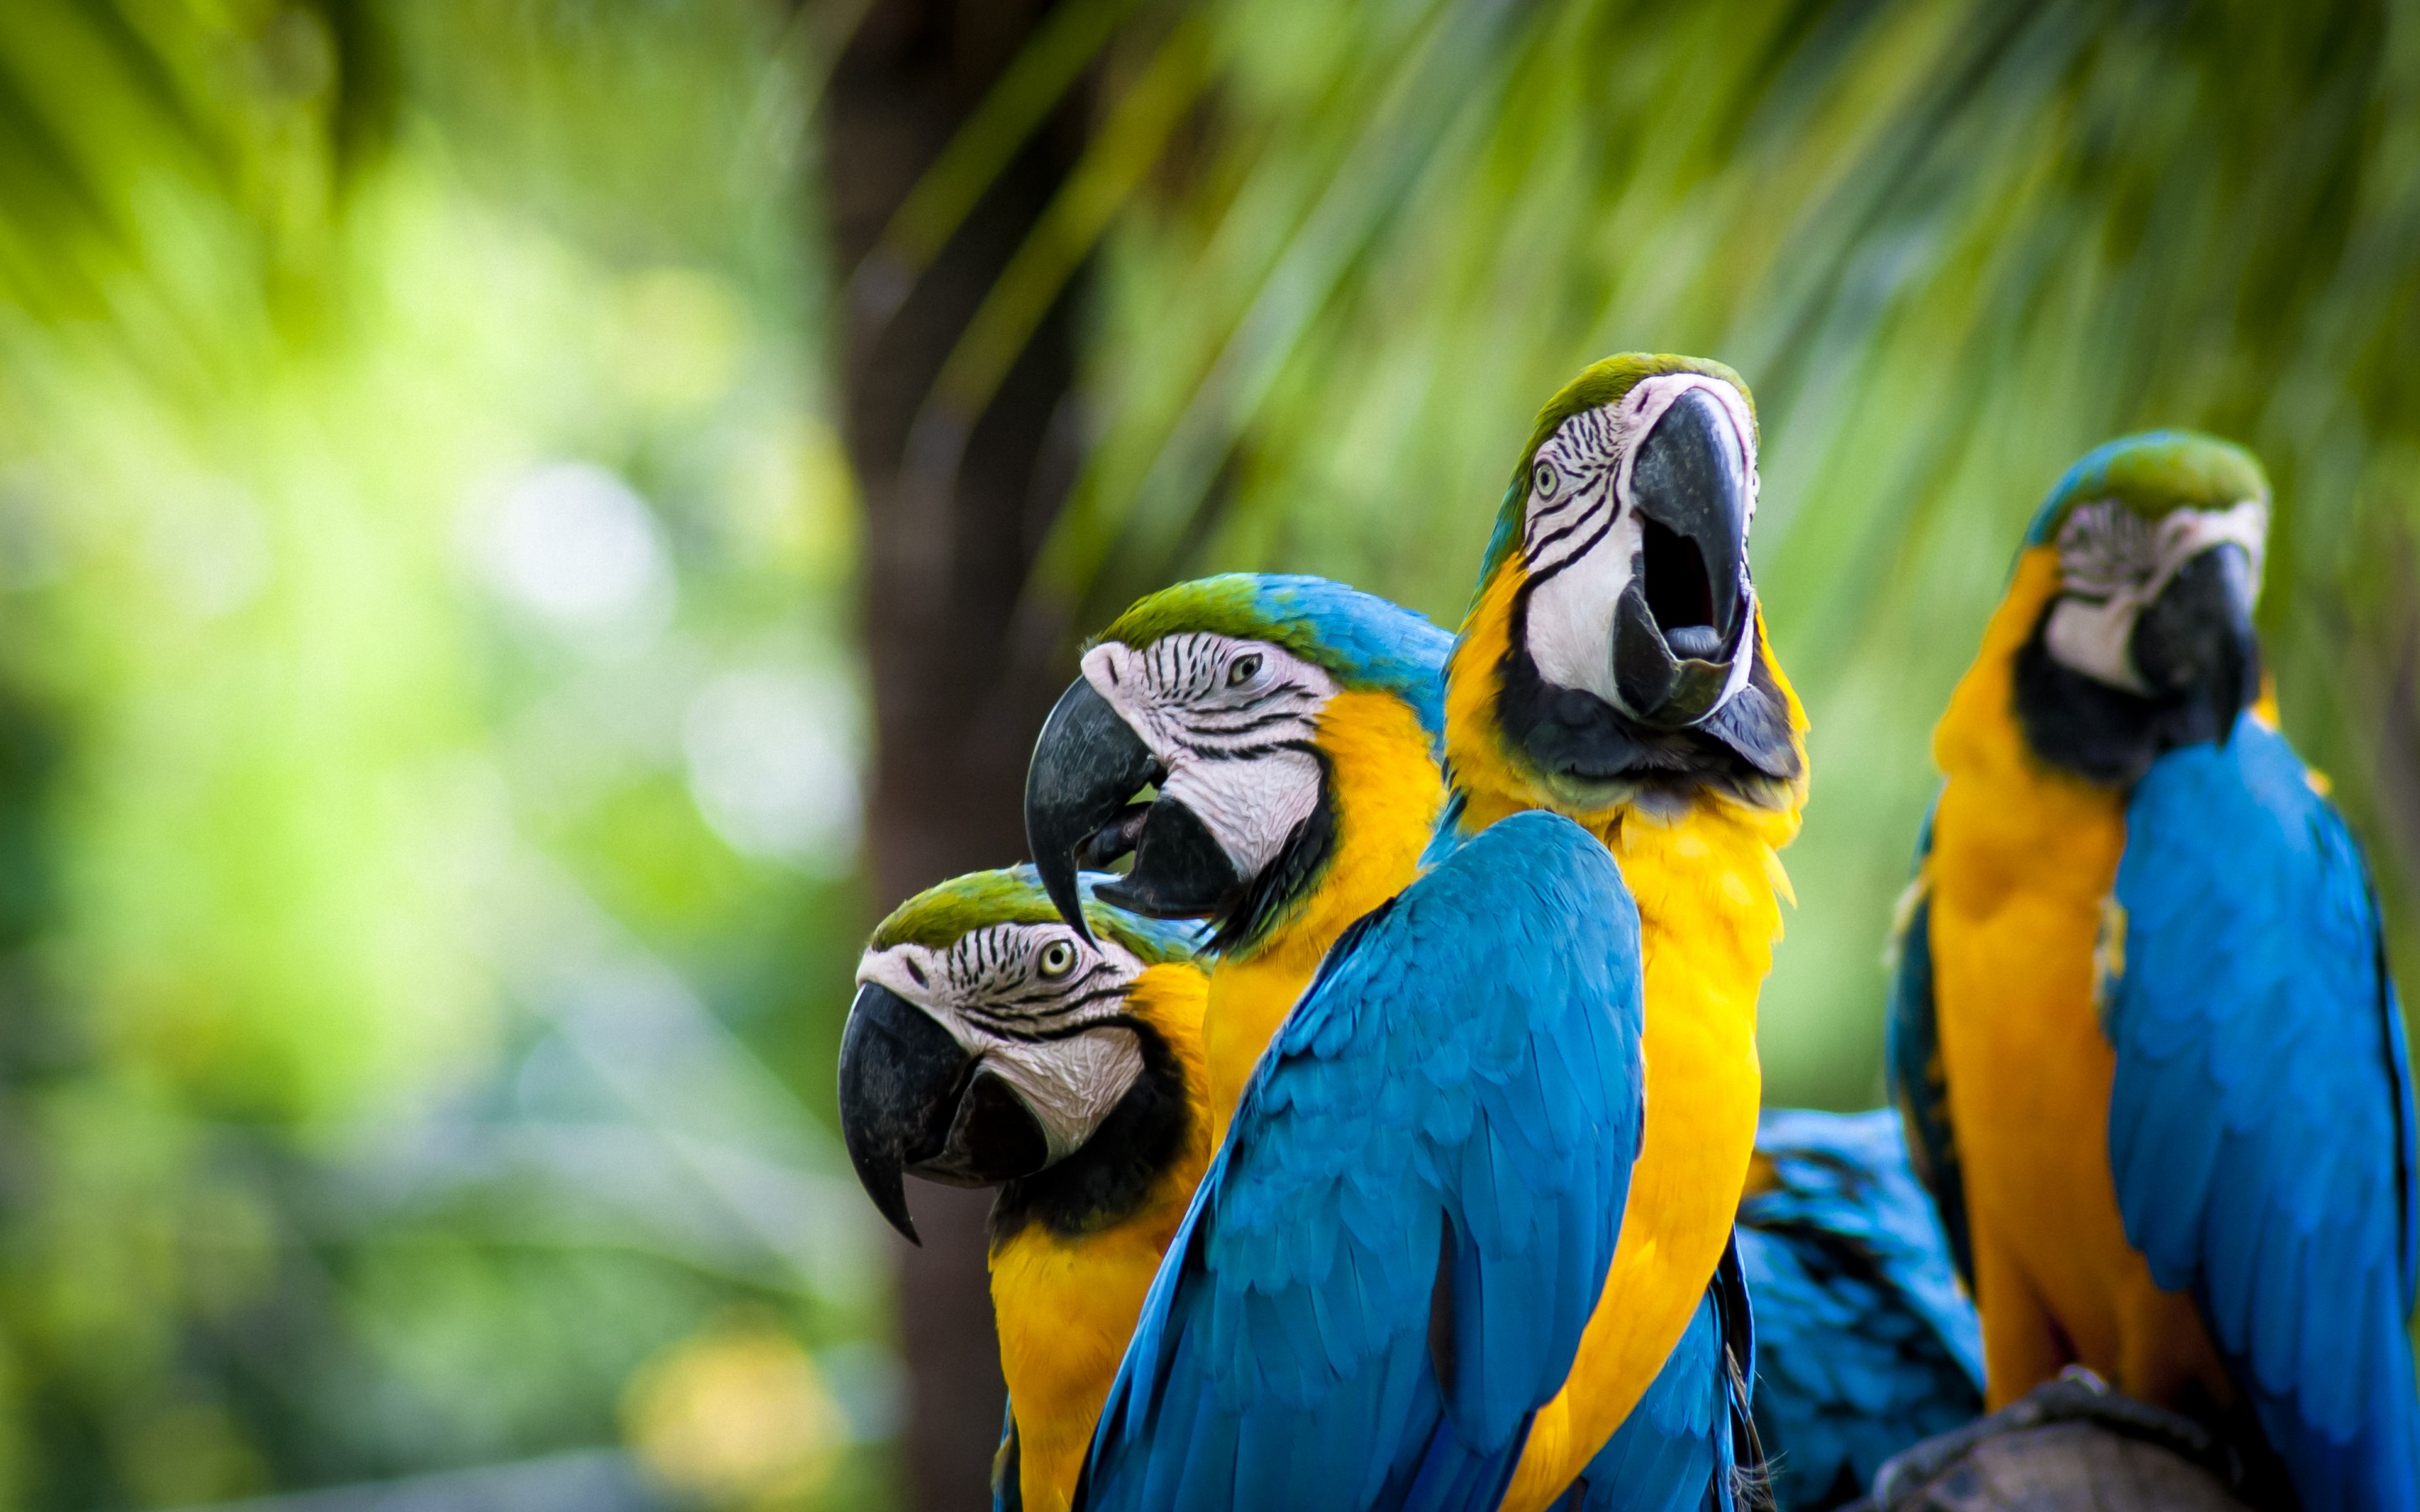 Image: Parrots, macaws, birds, beak, feathers, color, color